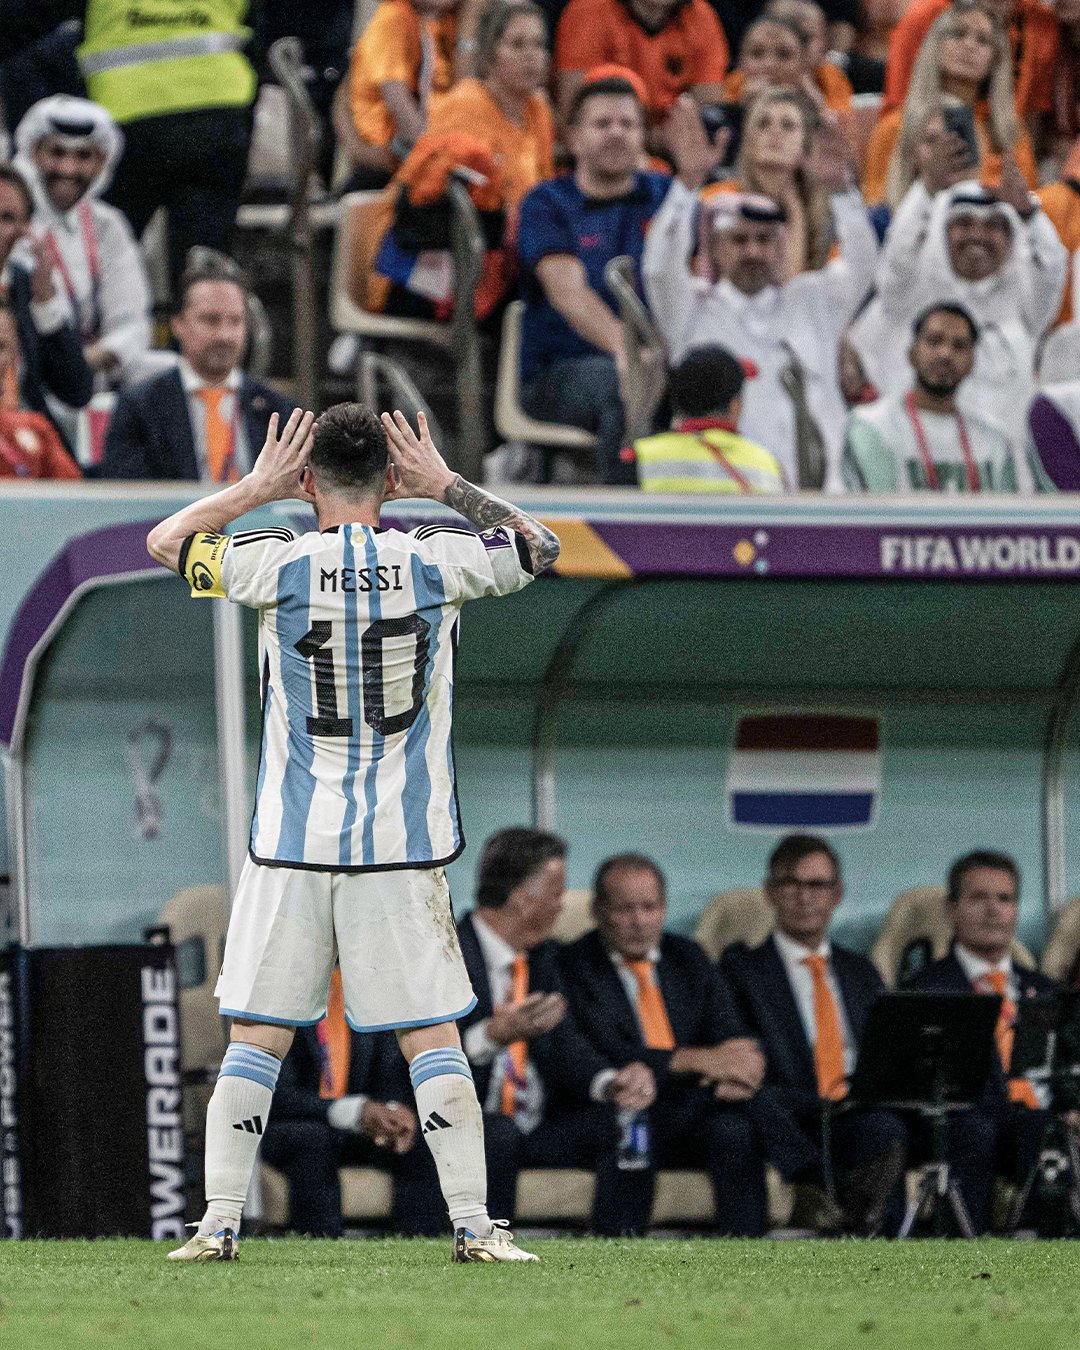 Lionel Messi, một trong những cầu thủ xuất sắc nhất của đội tuyển Argentina, đang rất phấn khích và ăn mừng trong trận đấu với tuyển Hà Lan. Hãy xem hình ảnh để thấy sự nhiệt tình của anh ta!